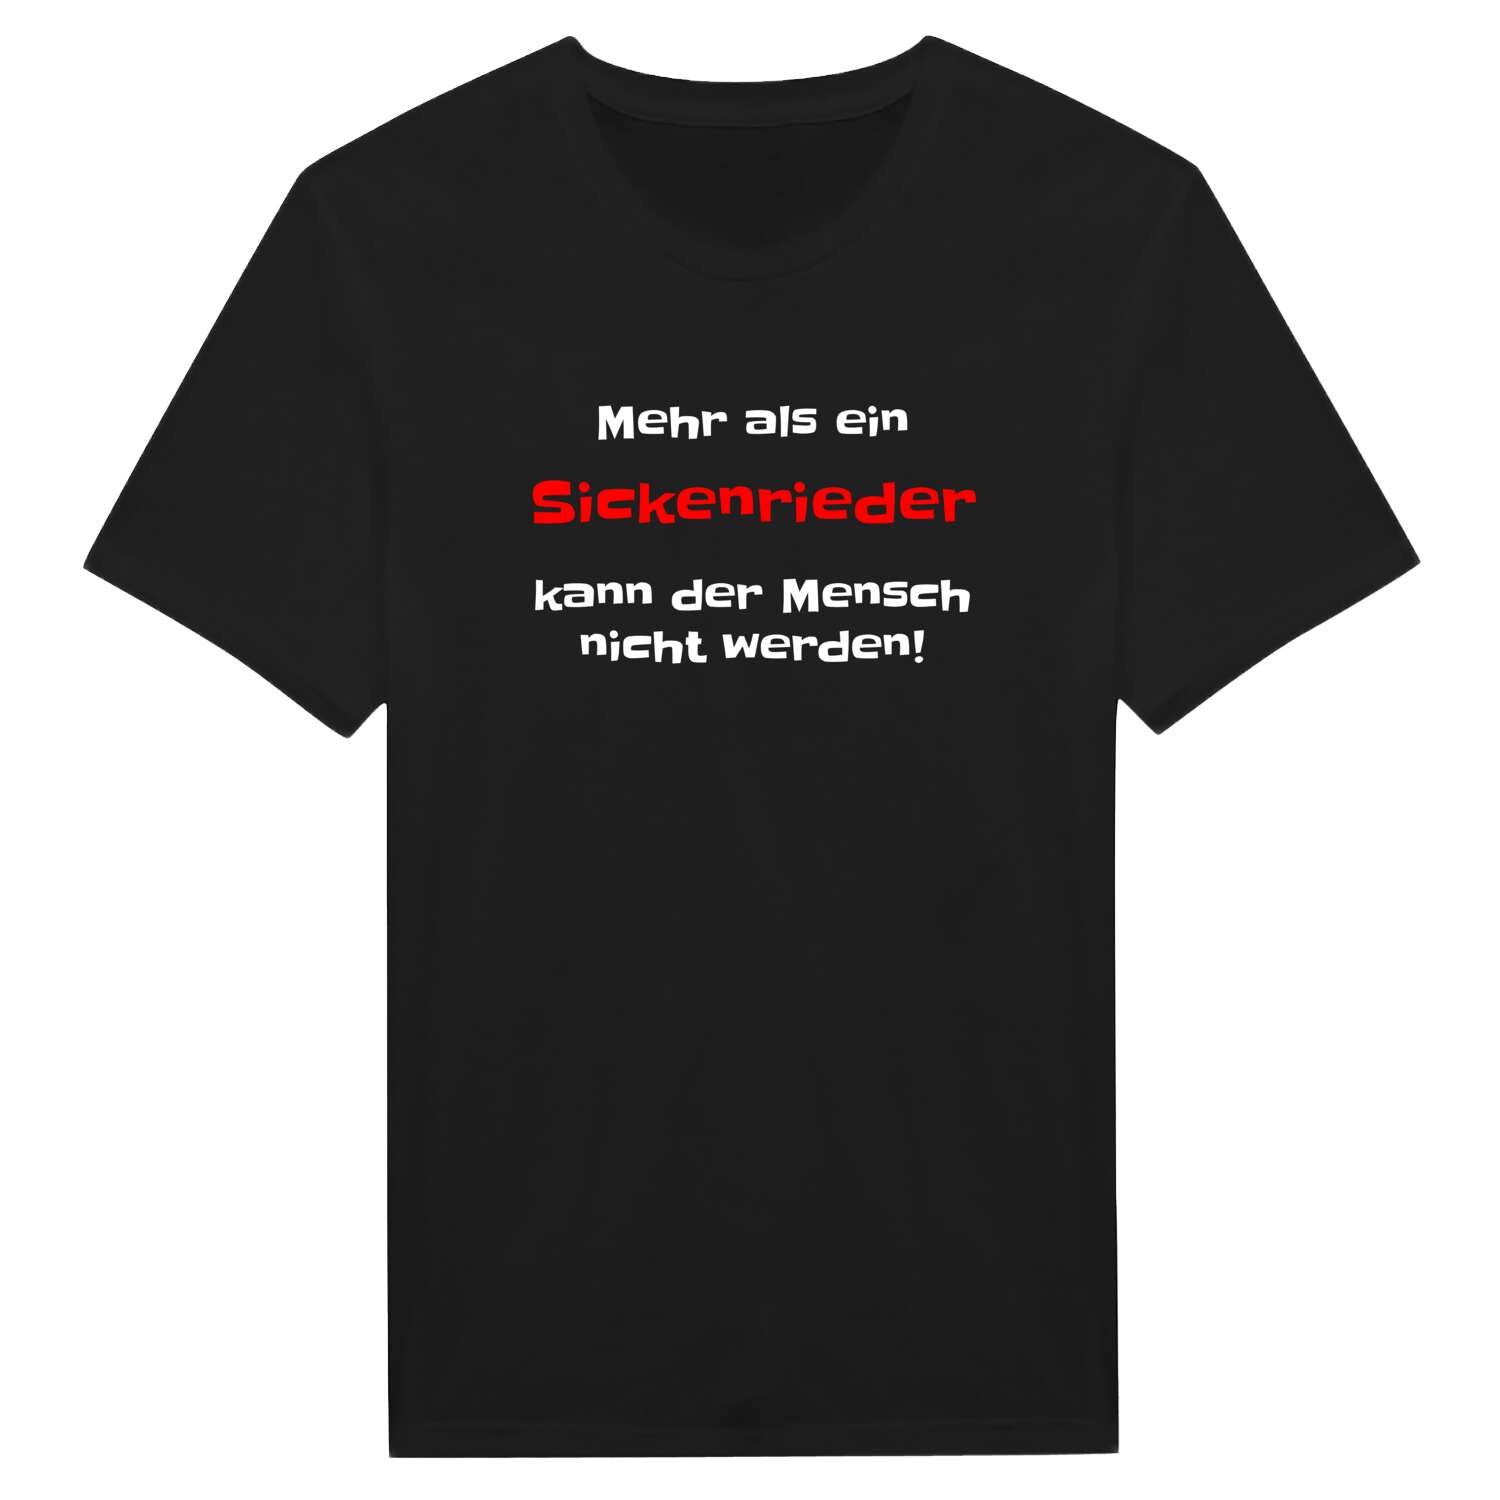 Sickenried T-Shirt »Mehr als ein«